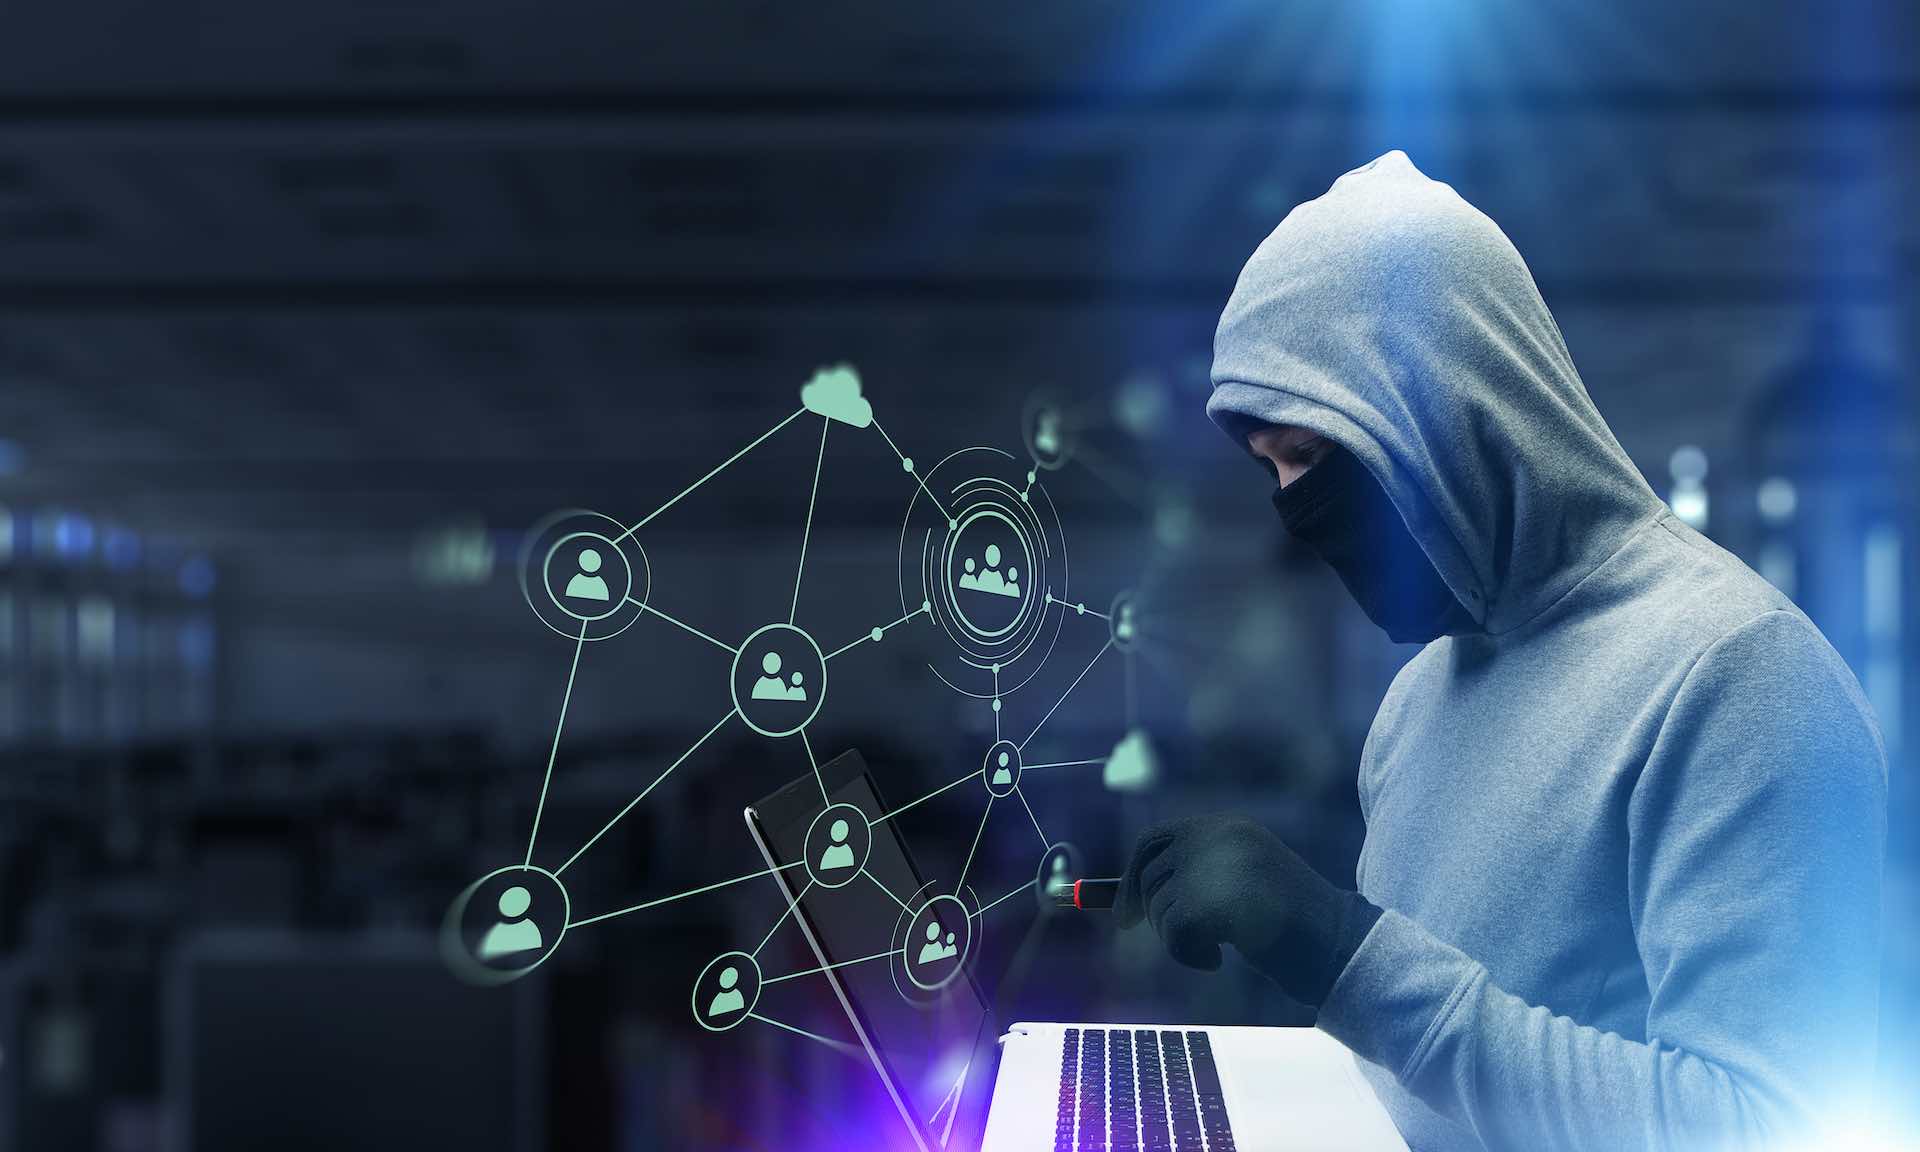 Ilustração mostra pessoa vestindo um moletom com capuz e mexendo em um notebook, representando temas como fraude, golpe, hacker, redes sociais